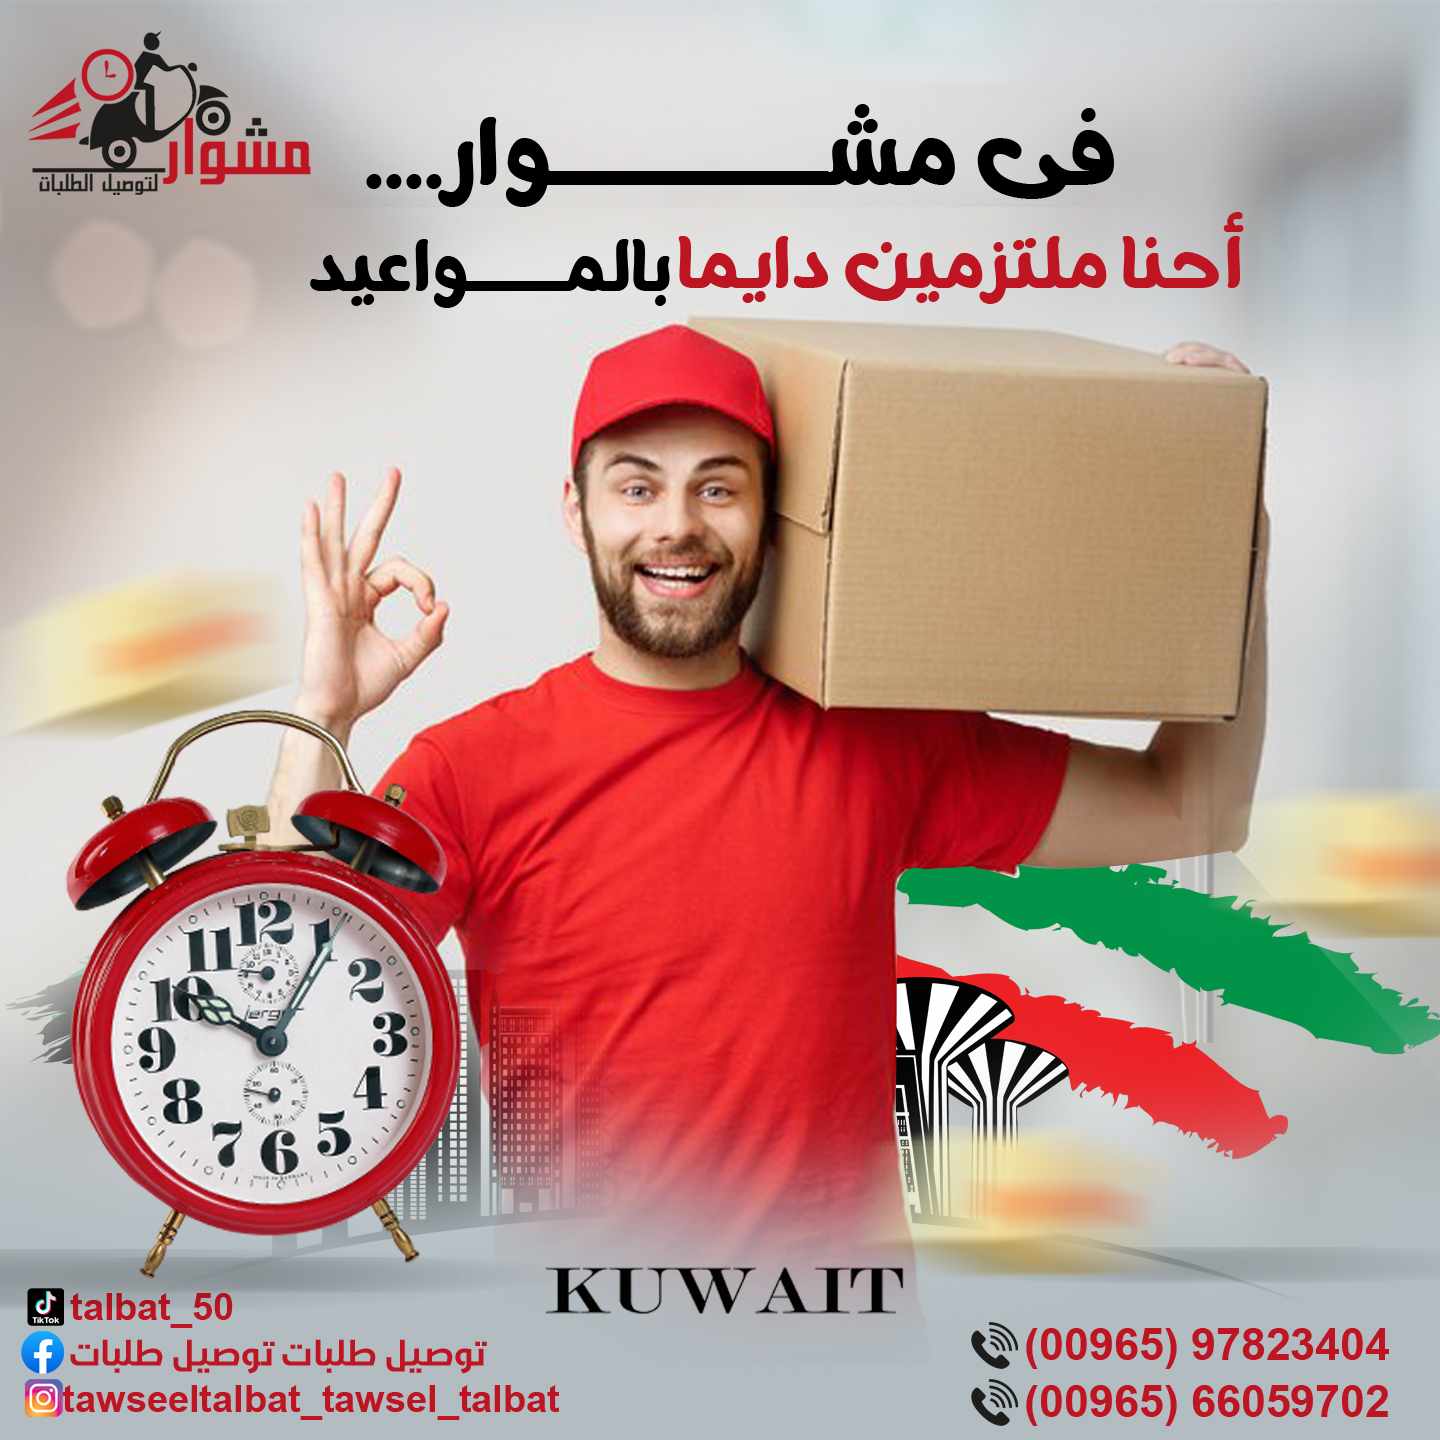 خدمة توصيل فى الكويت 818481682